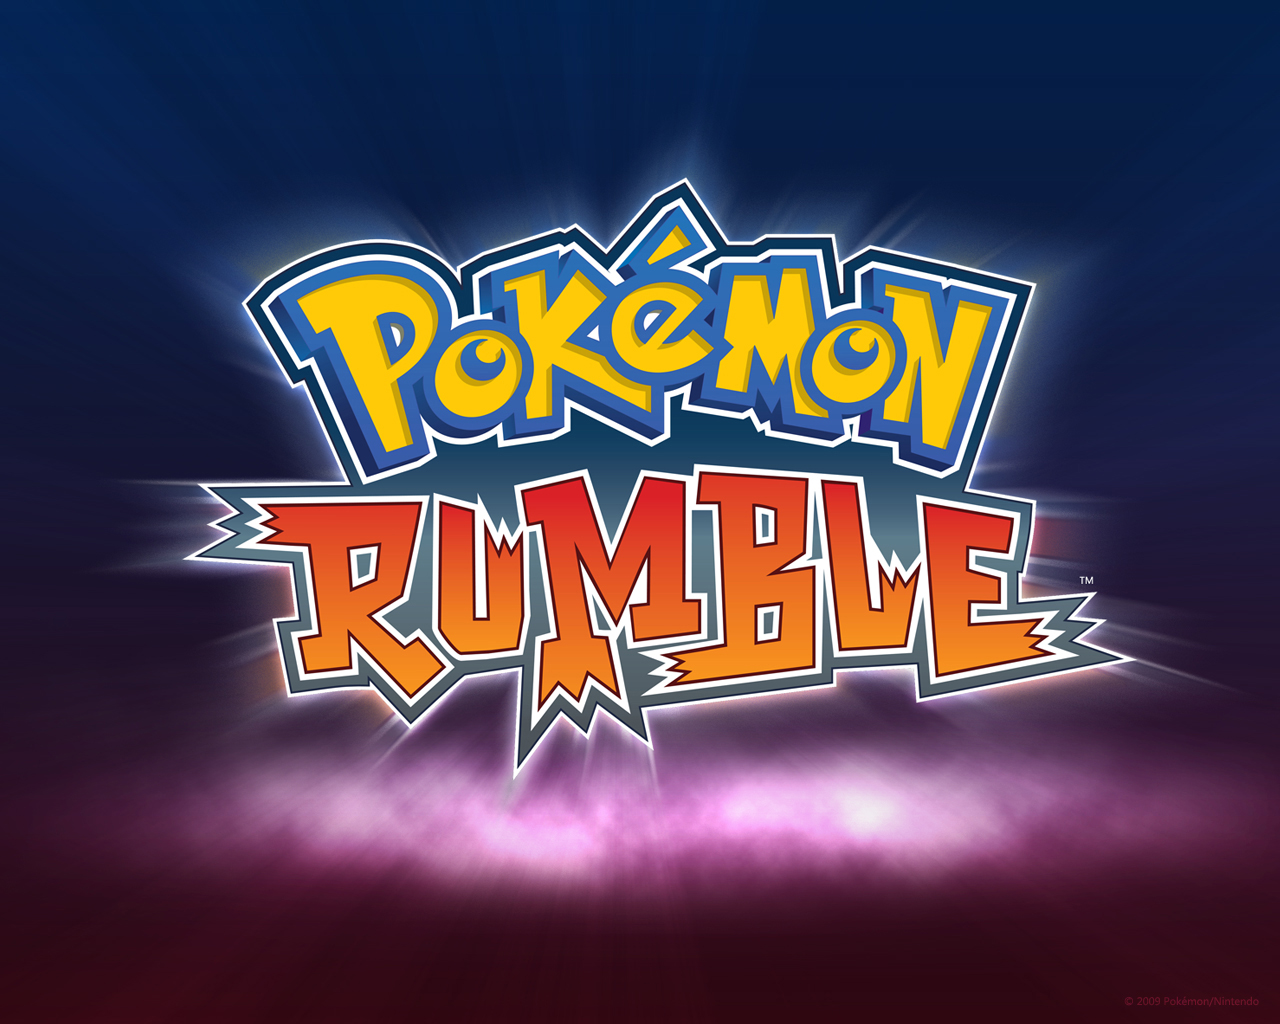 Pokemon rumble rom